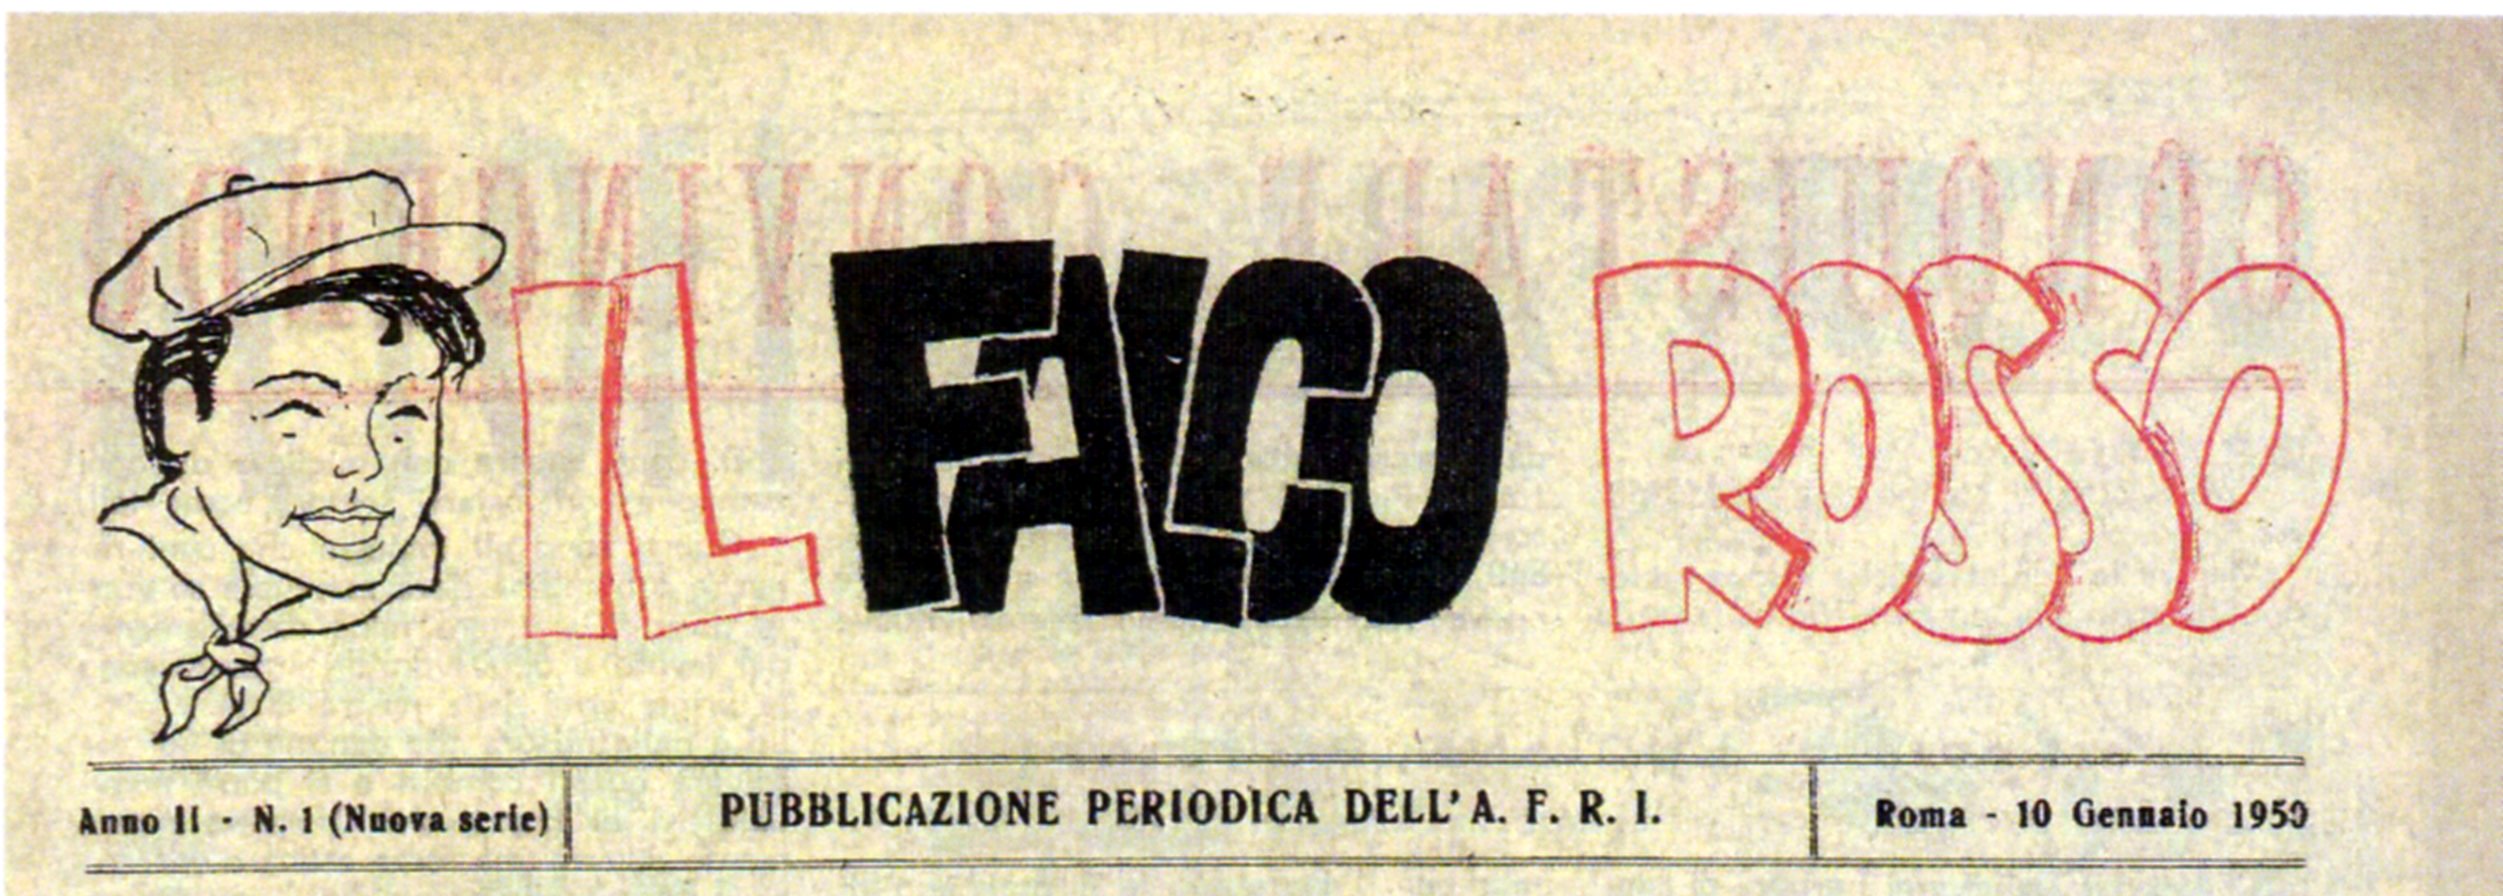 logo falco rosso